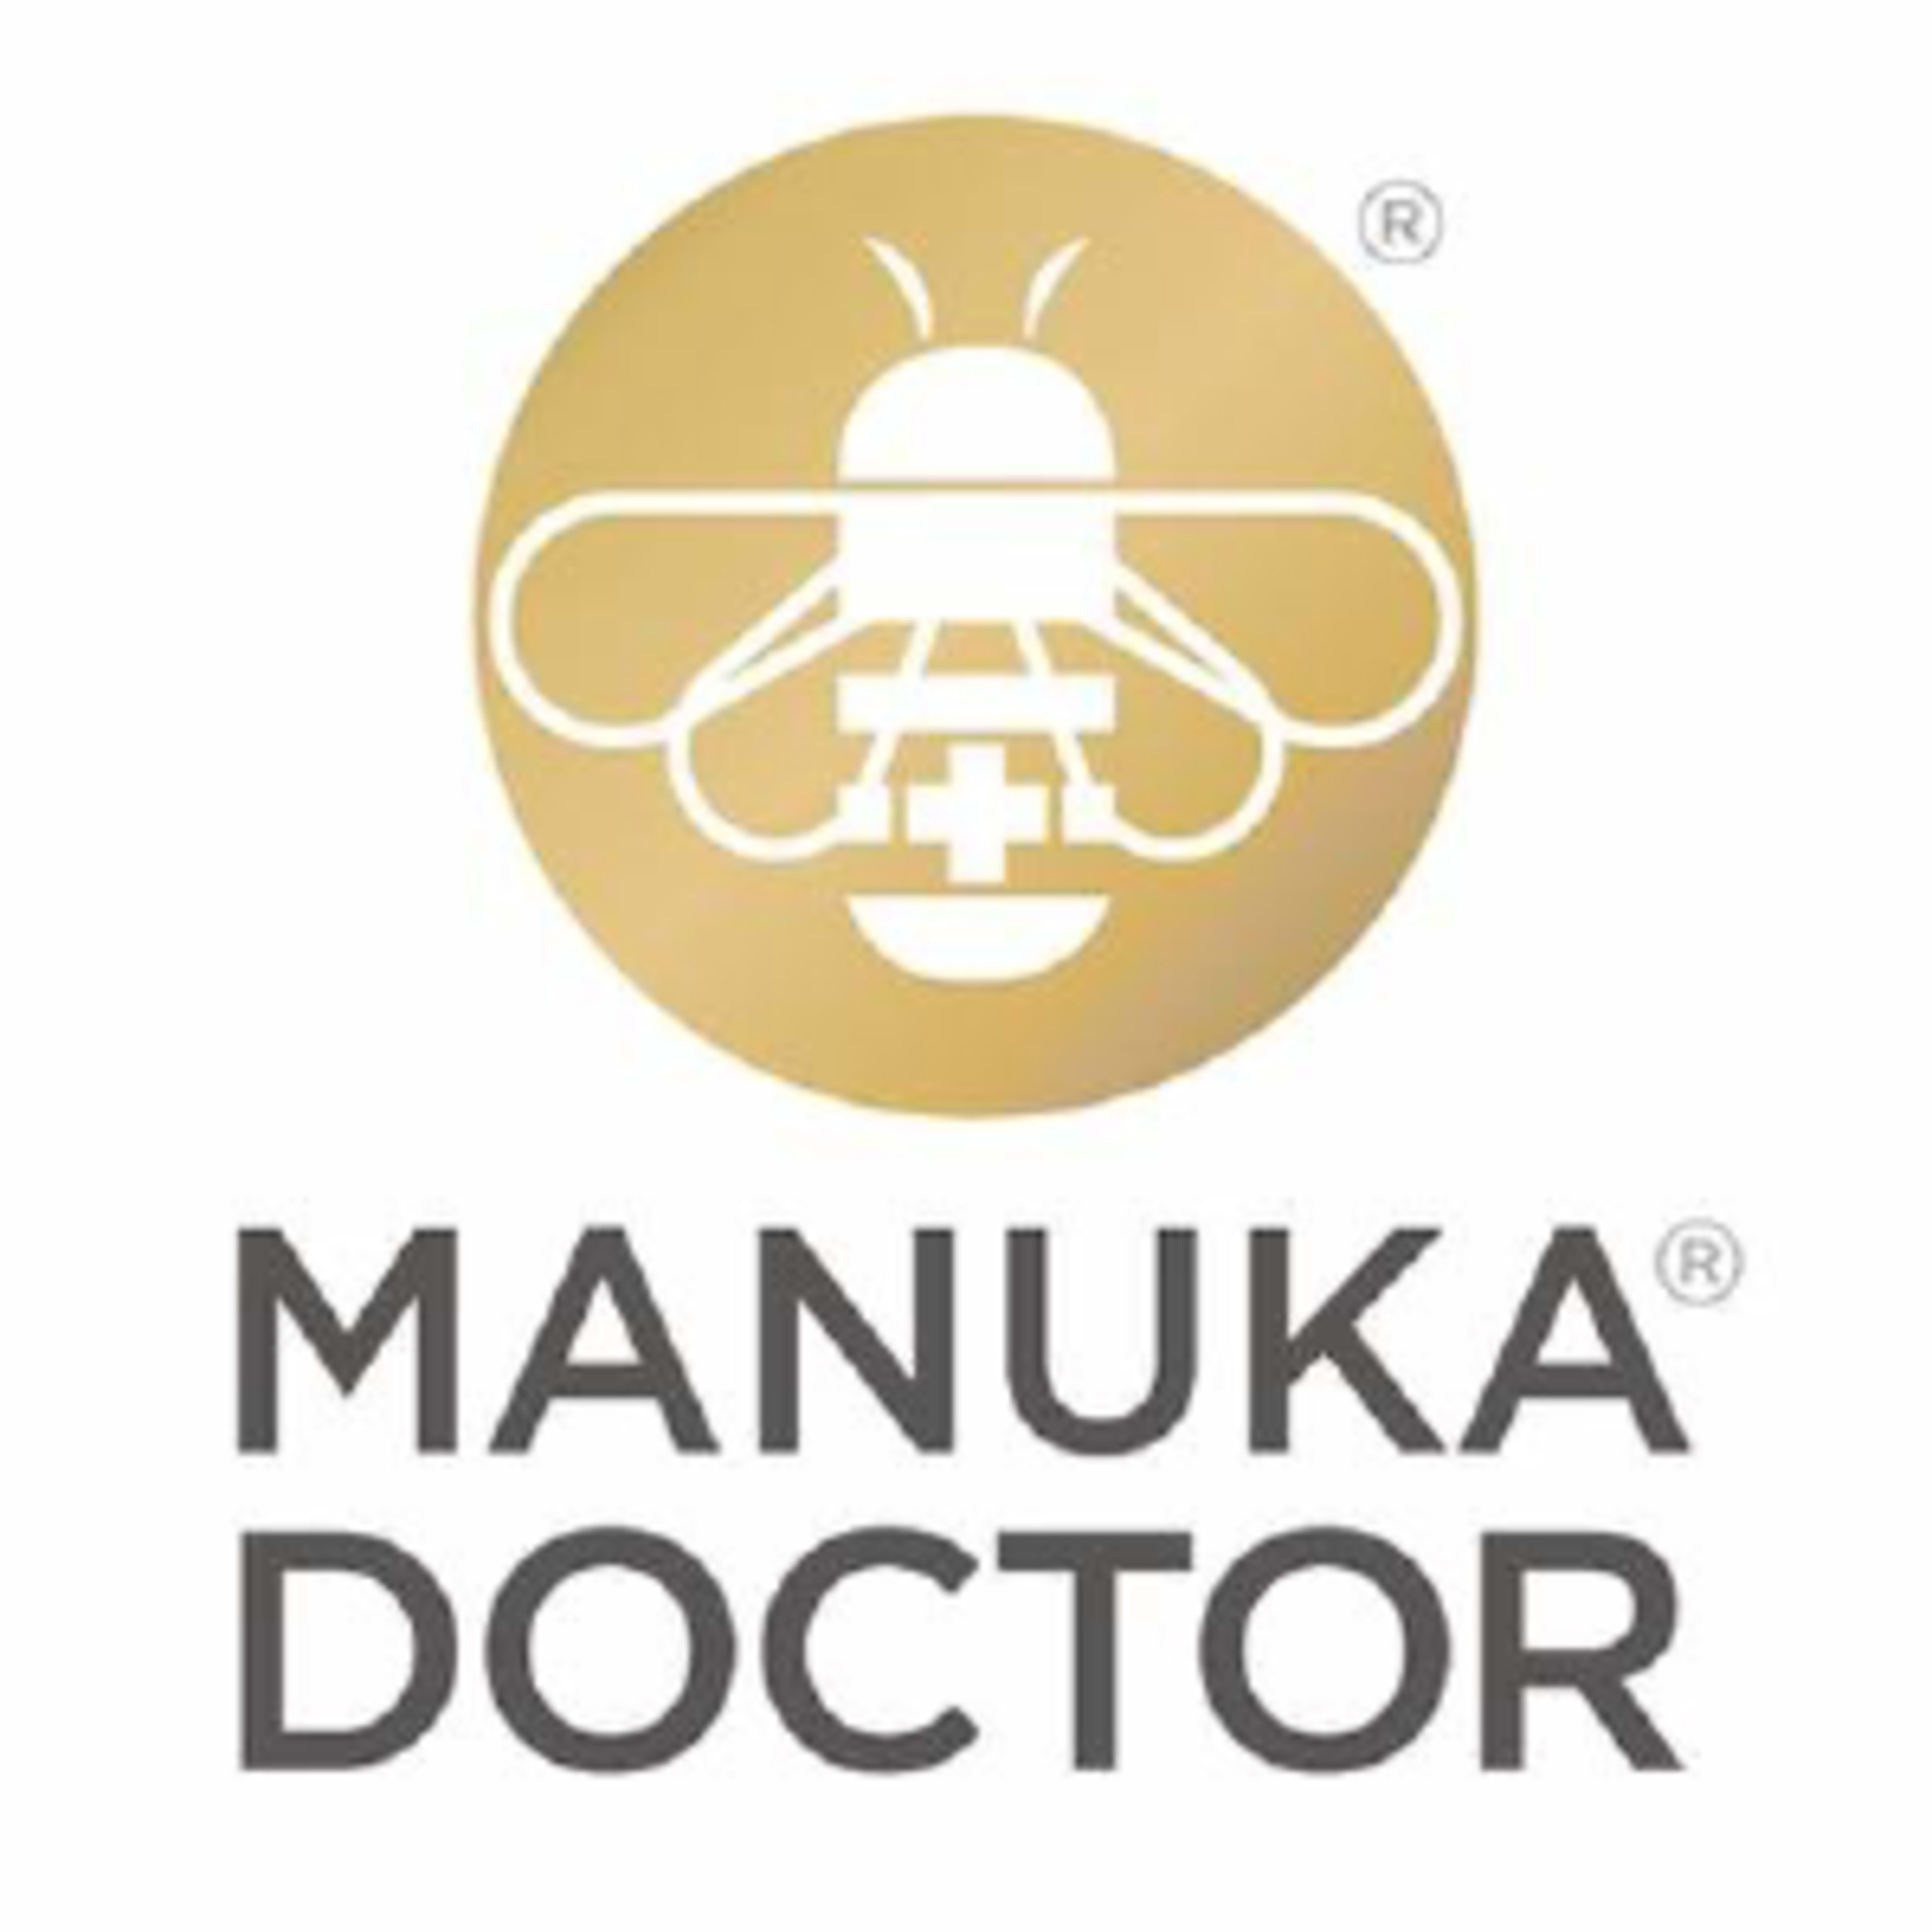 Manuka DoctorCode